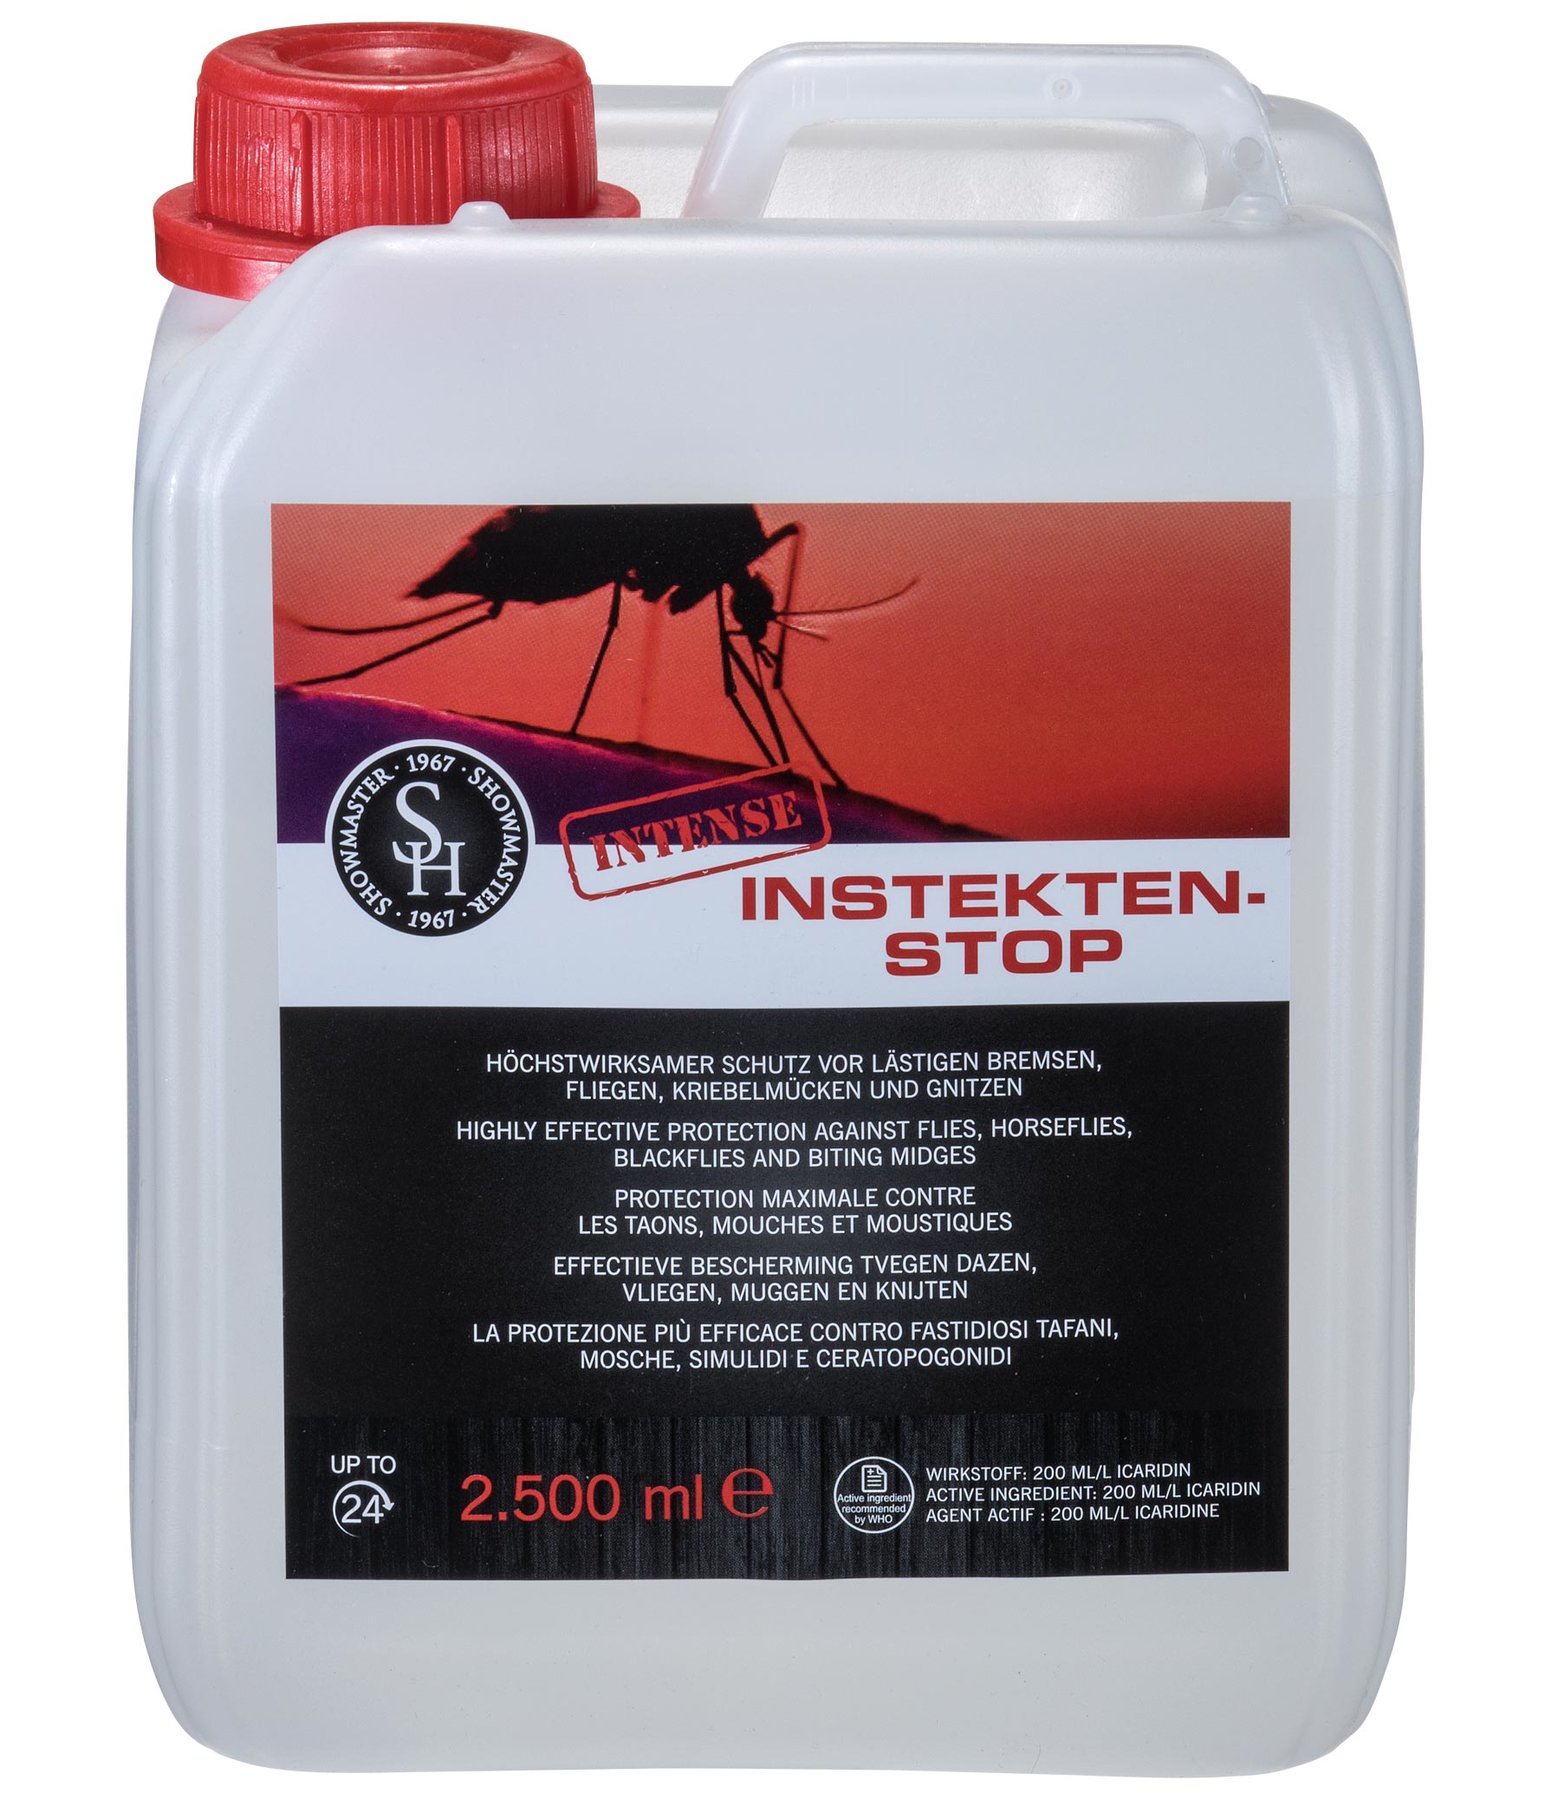 Insekten-Stop Abwehrspray INTENSE